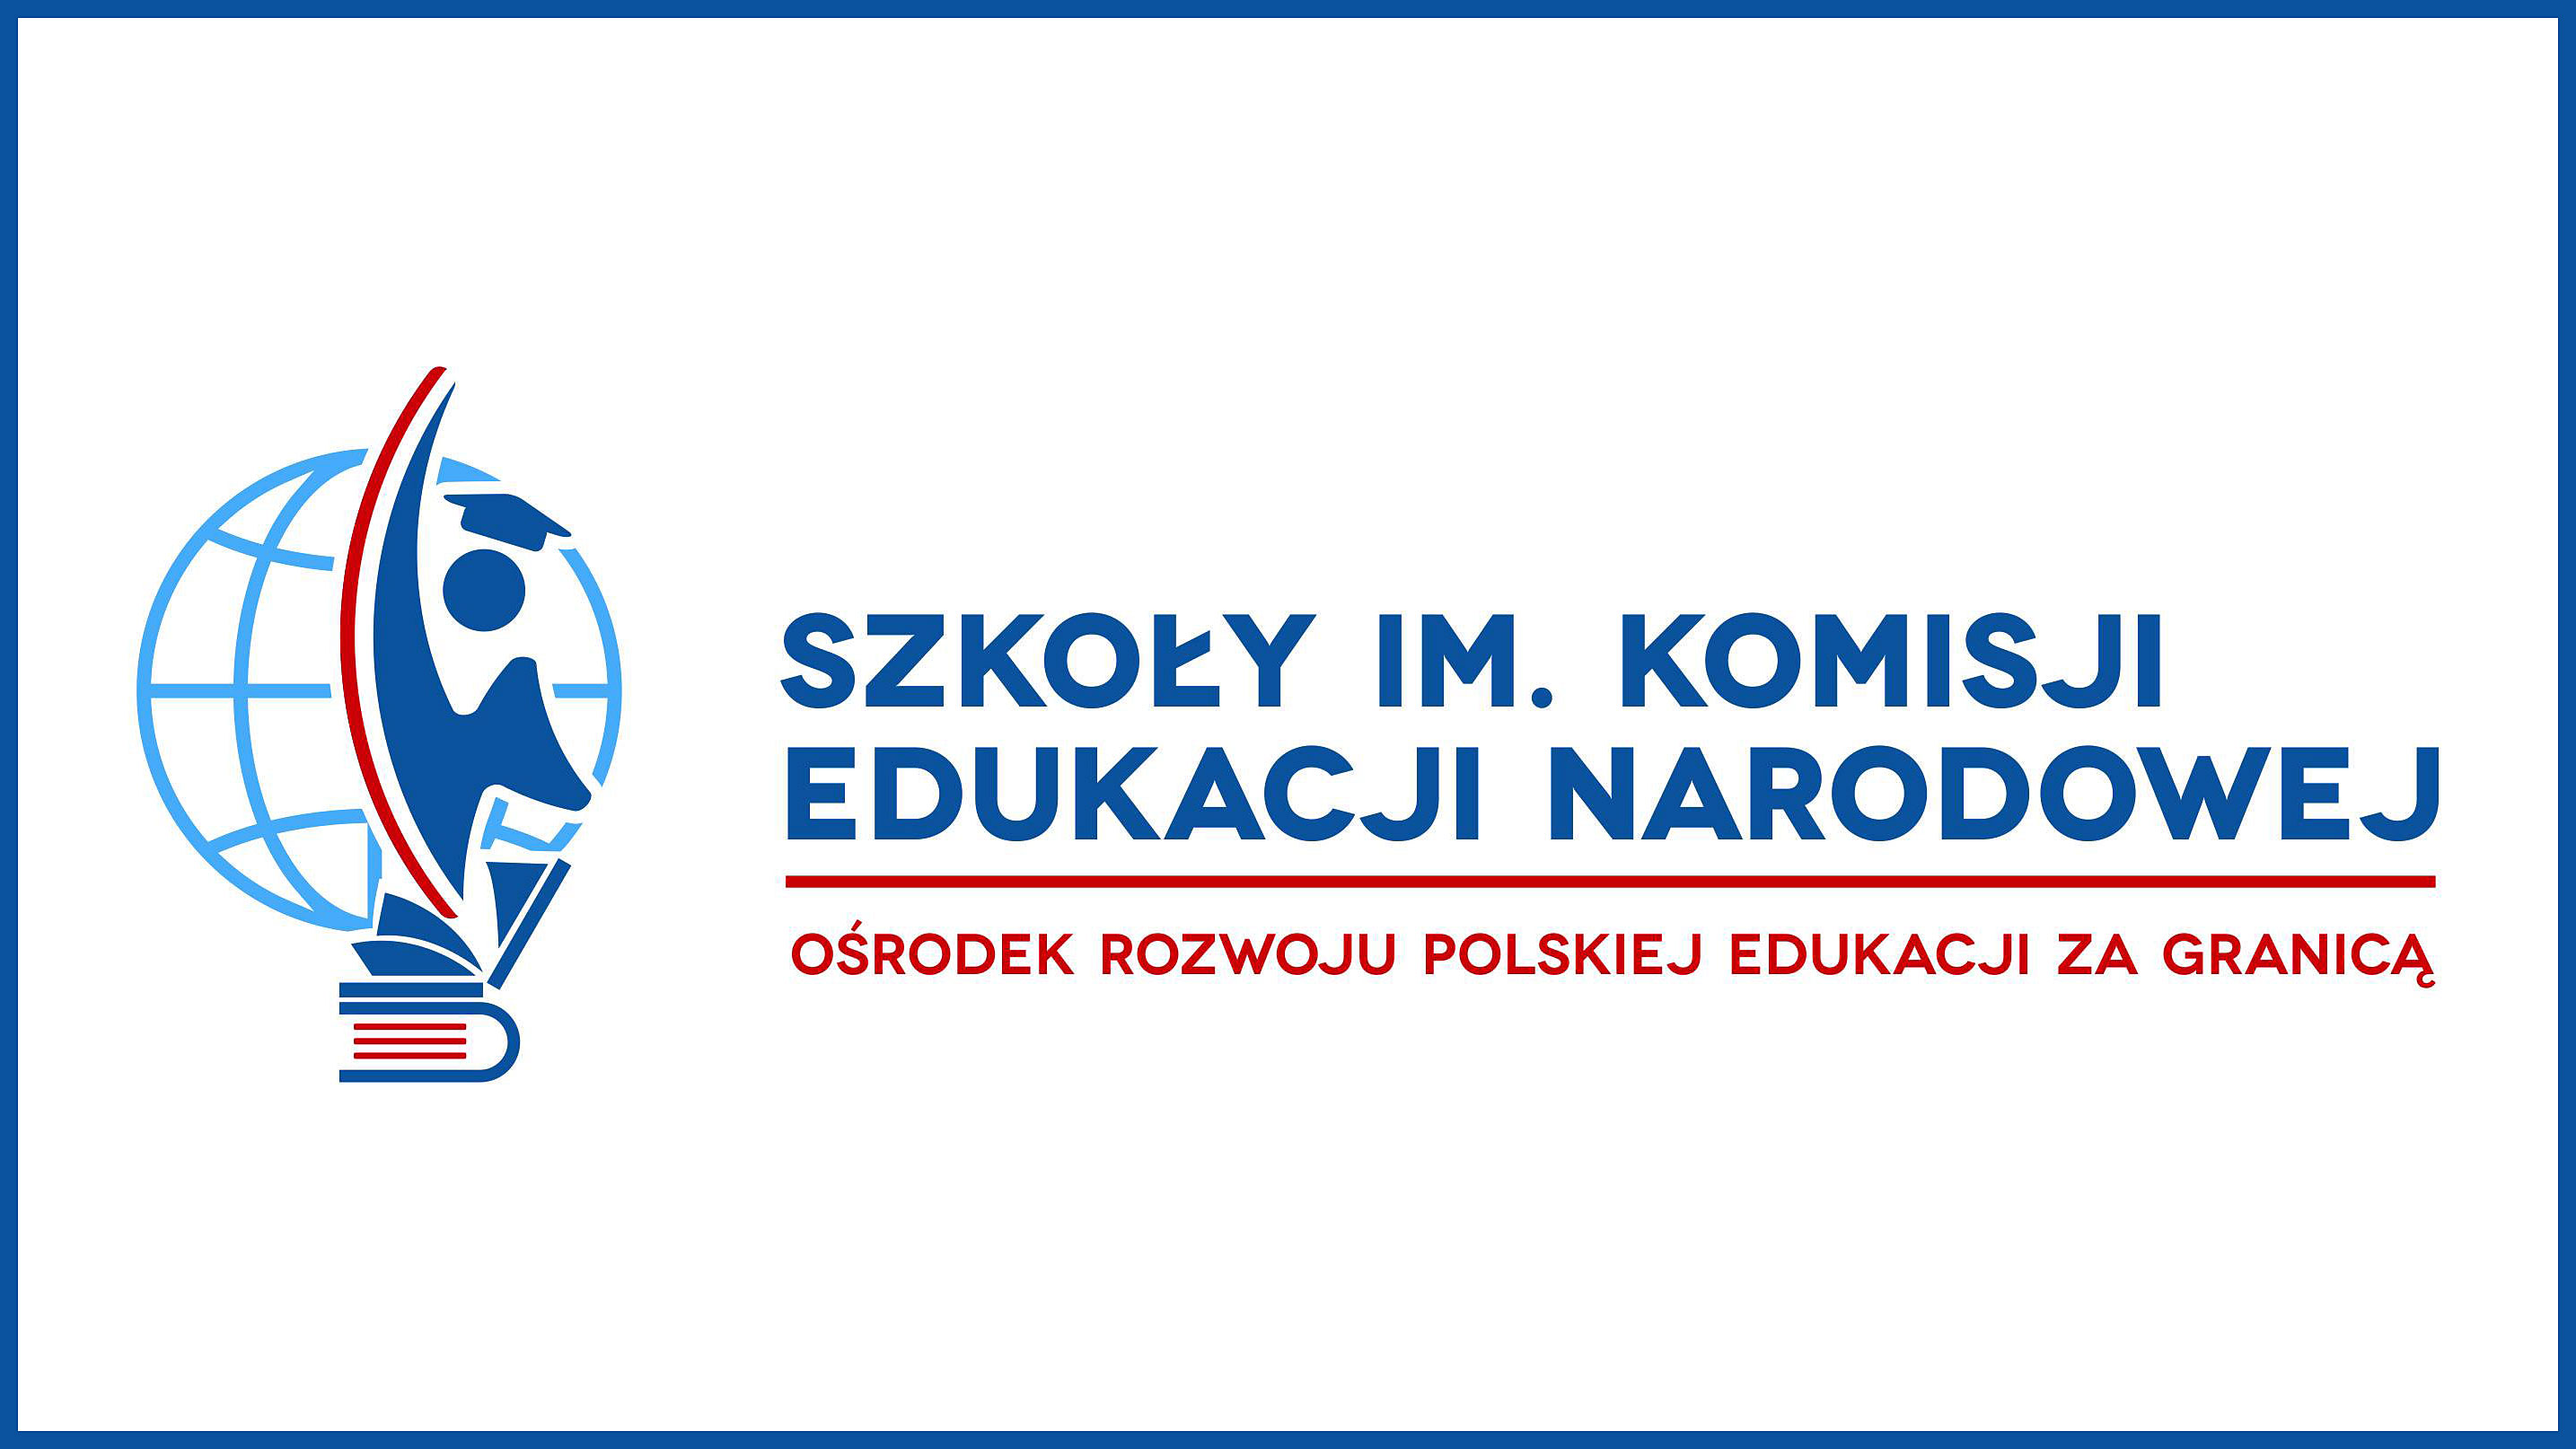 Zapisy do szkół, kształcących na odległość, dla dzieci i młodzieży polskiej i polskiego pochodzenia przebywających za granicą